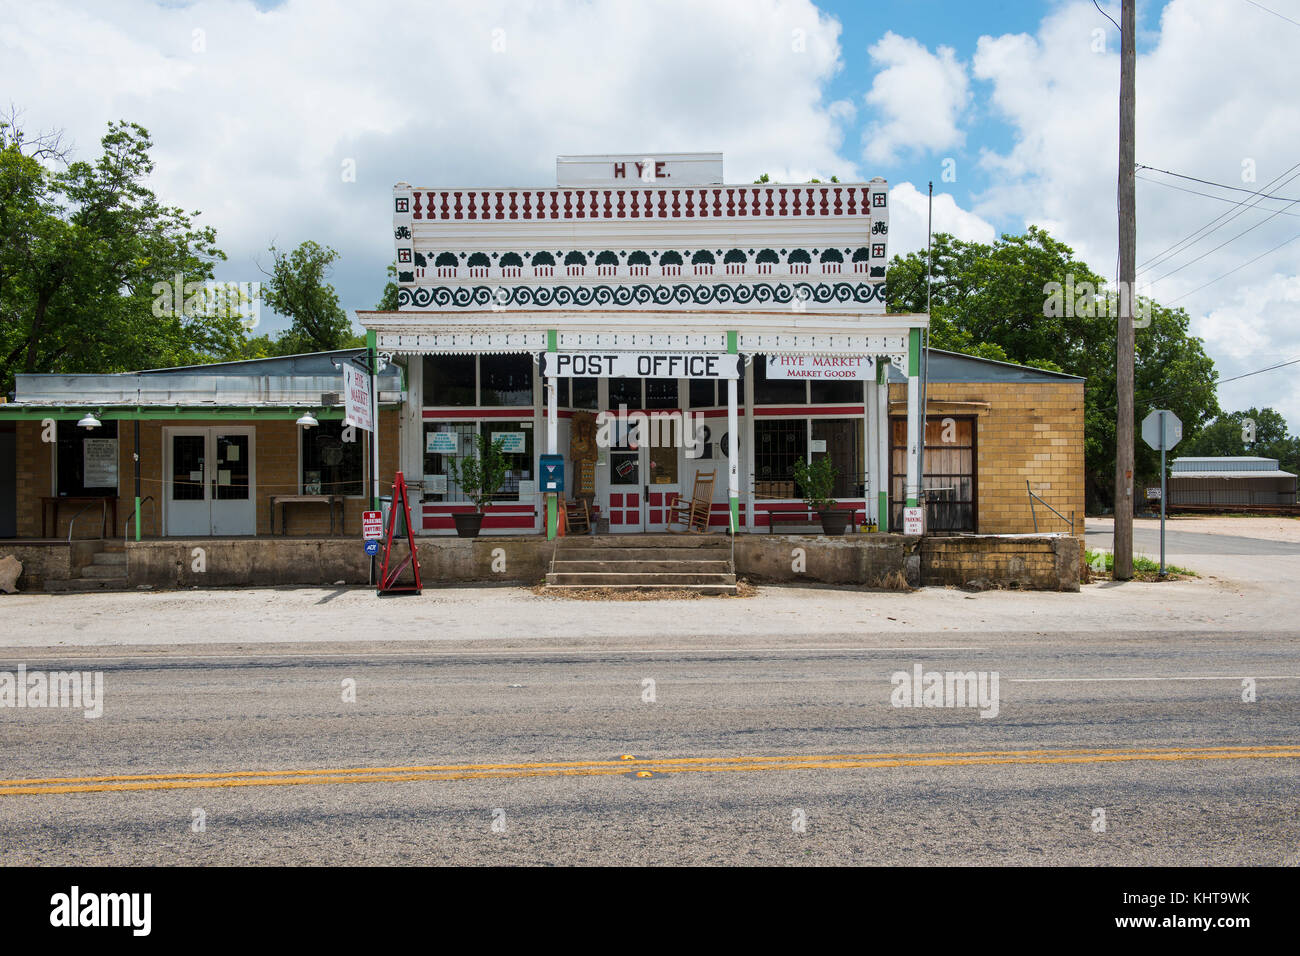 Hye, Texas - Juni 8, 2014: Blick auf den General Store und Post in der kleinen Stadt hye in Texas, USA. Stockfoto